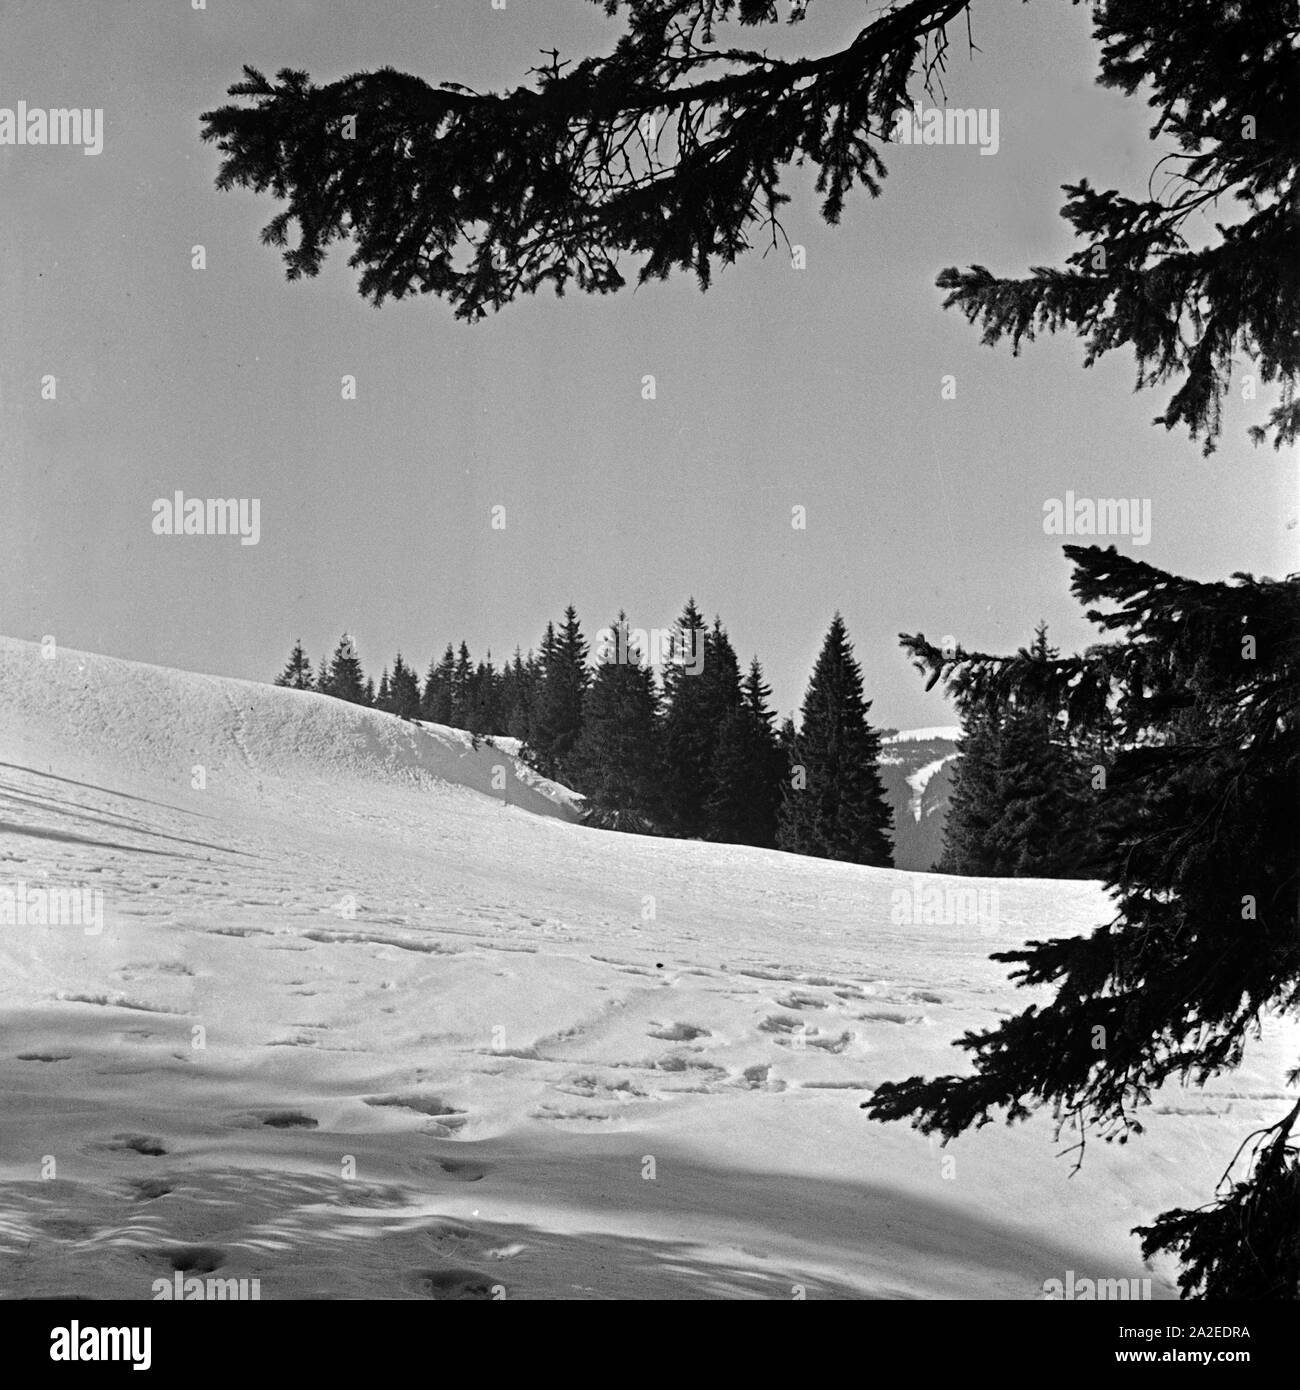 Winterlandschaft mit Spuren im Schnee, Deutschland 1930er Jahre. Il paese delle meraviglie invernali con le tracce nella neve, Germania 1930s. Foto Stock